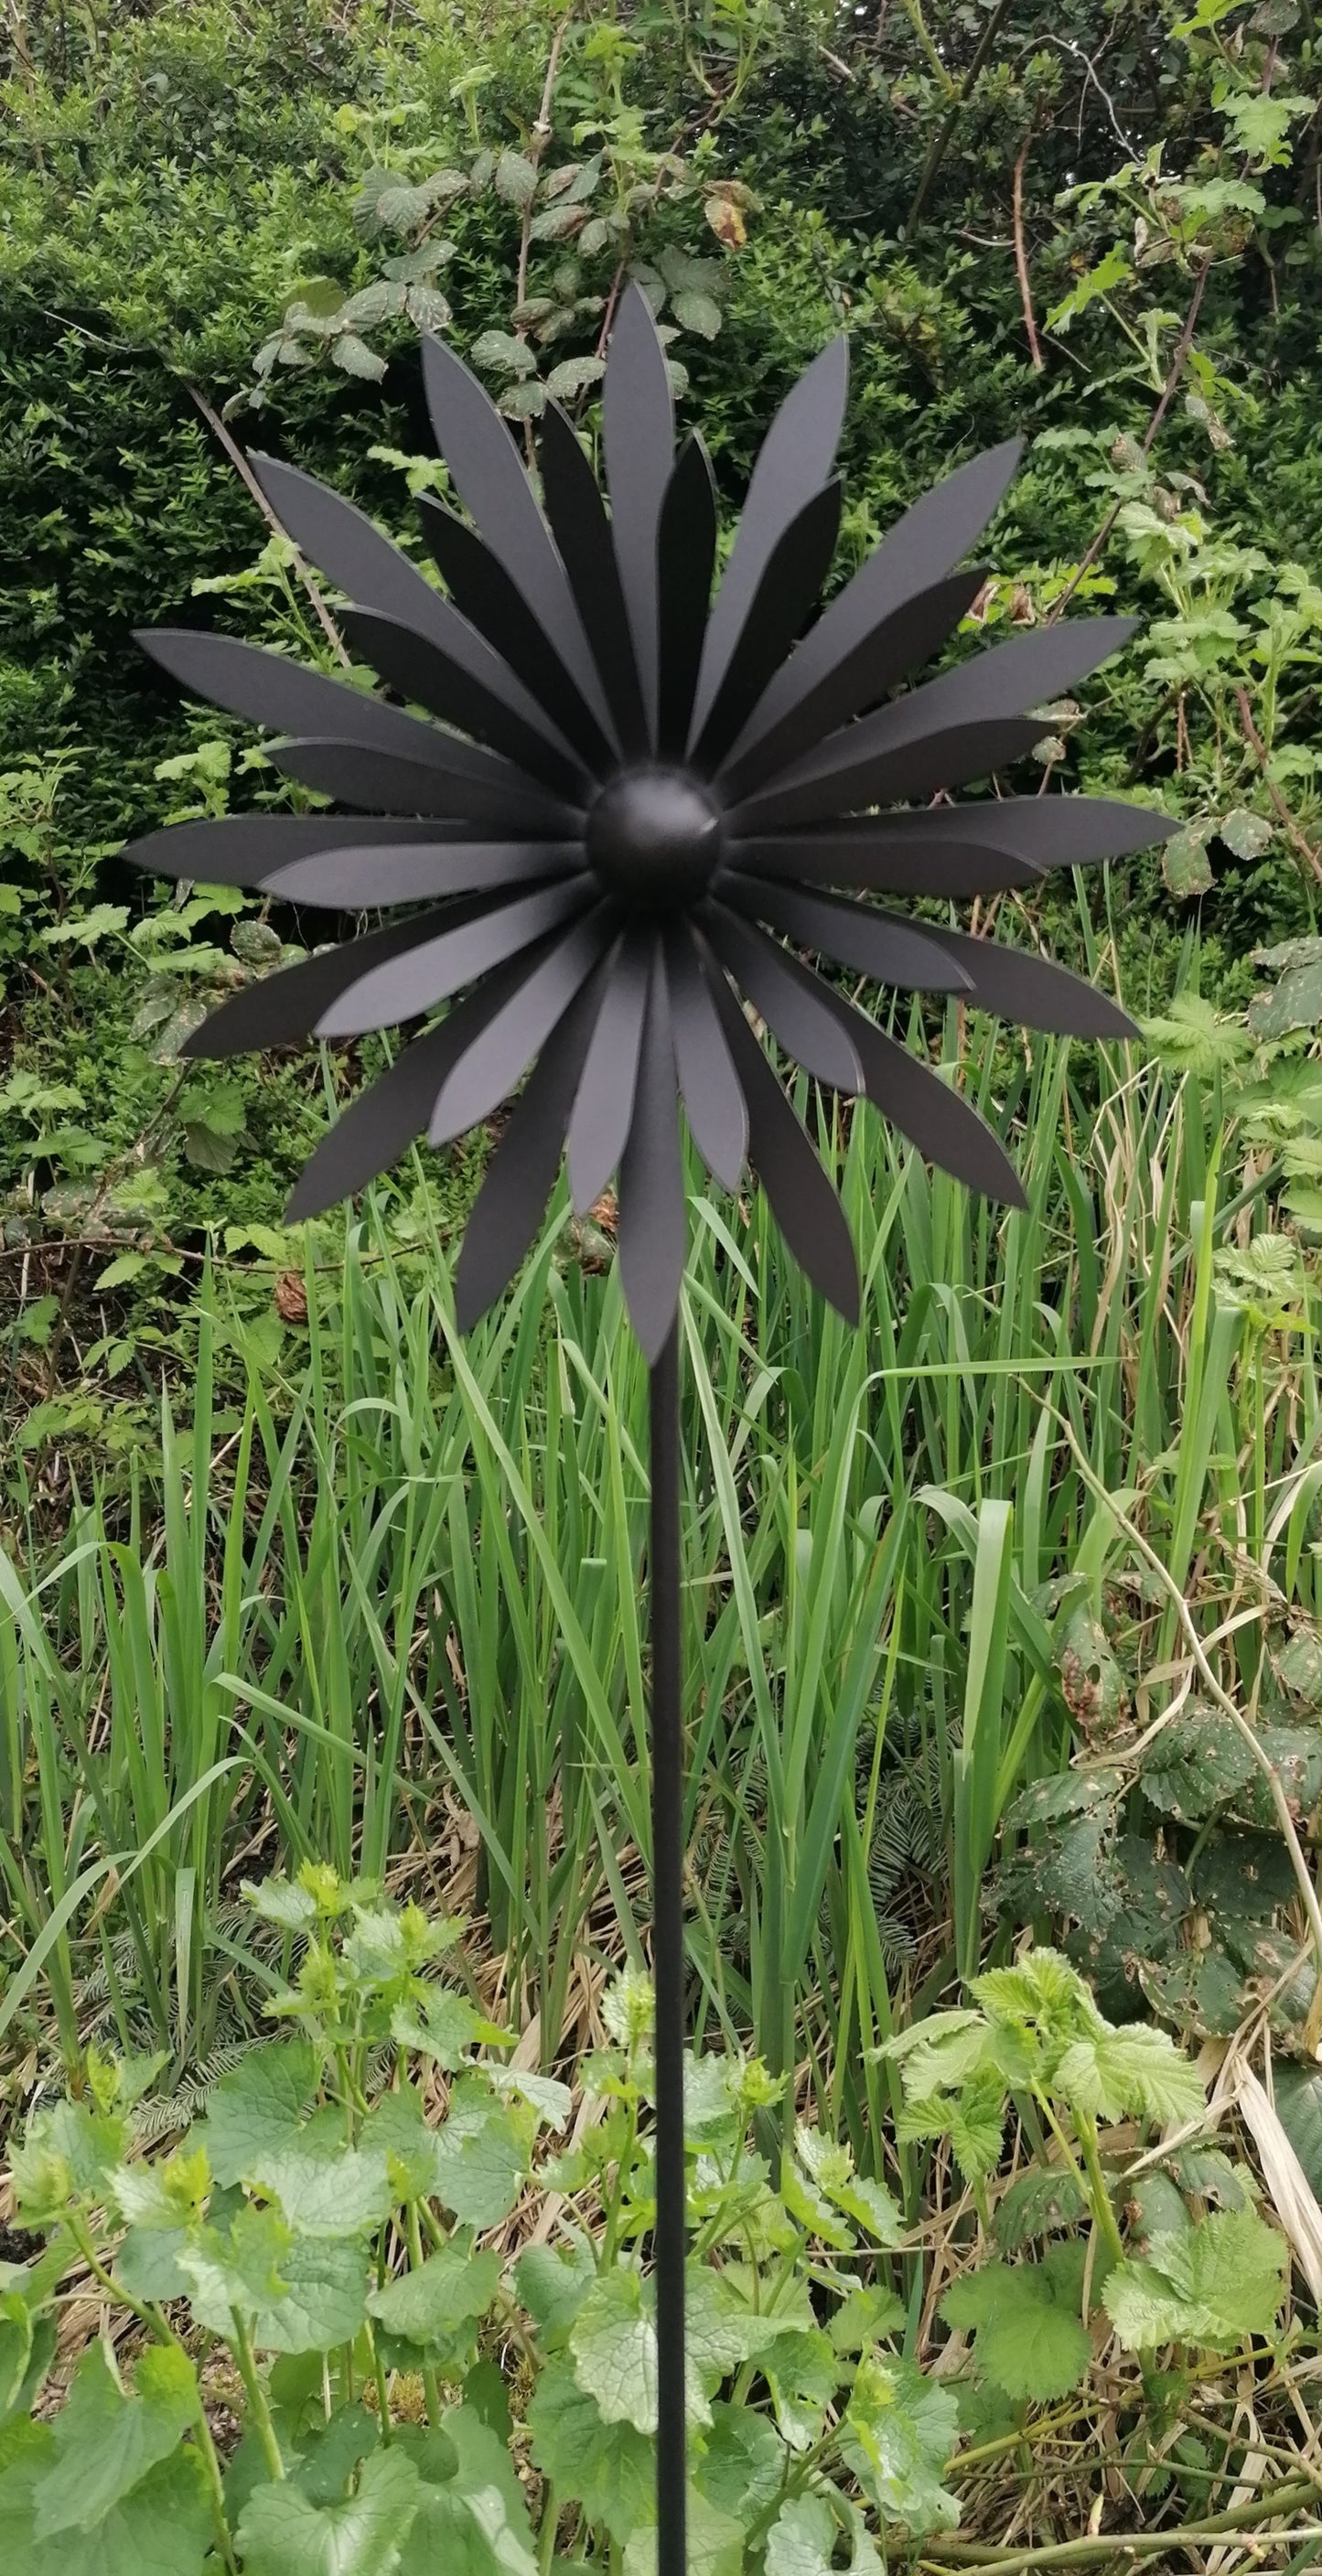 NEU !! Gartenstecker Blume Blüte in 3D ca. 110 cm lang aus Metall in einer schwarzen hochwertigen Pulverbeschichtung Rankhilfe